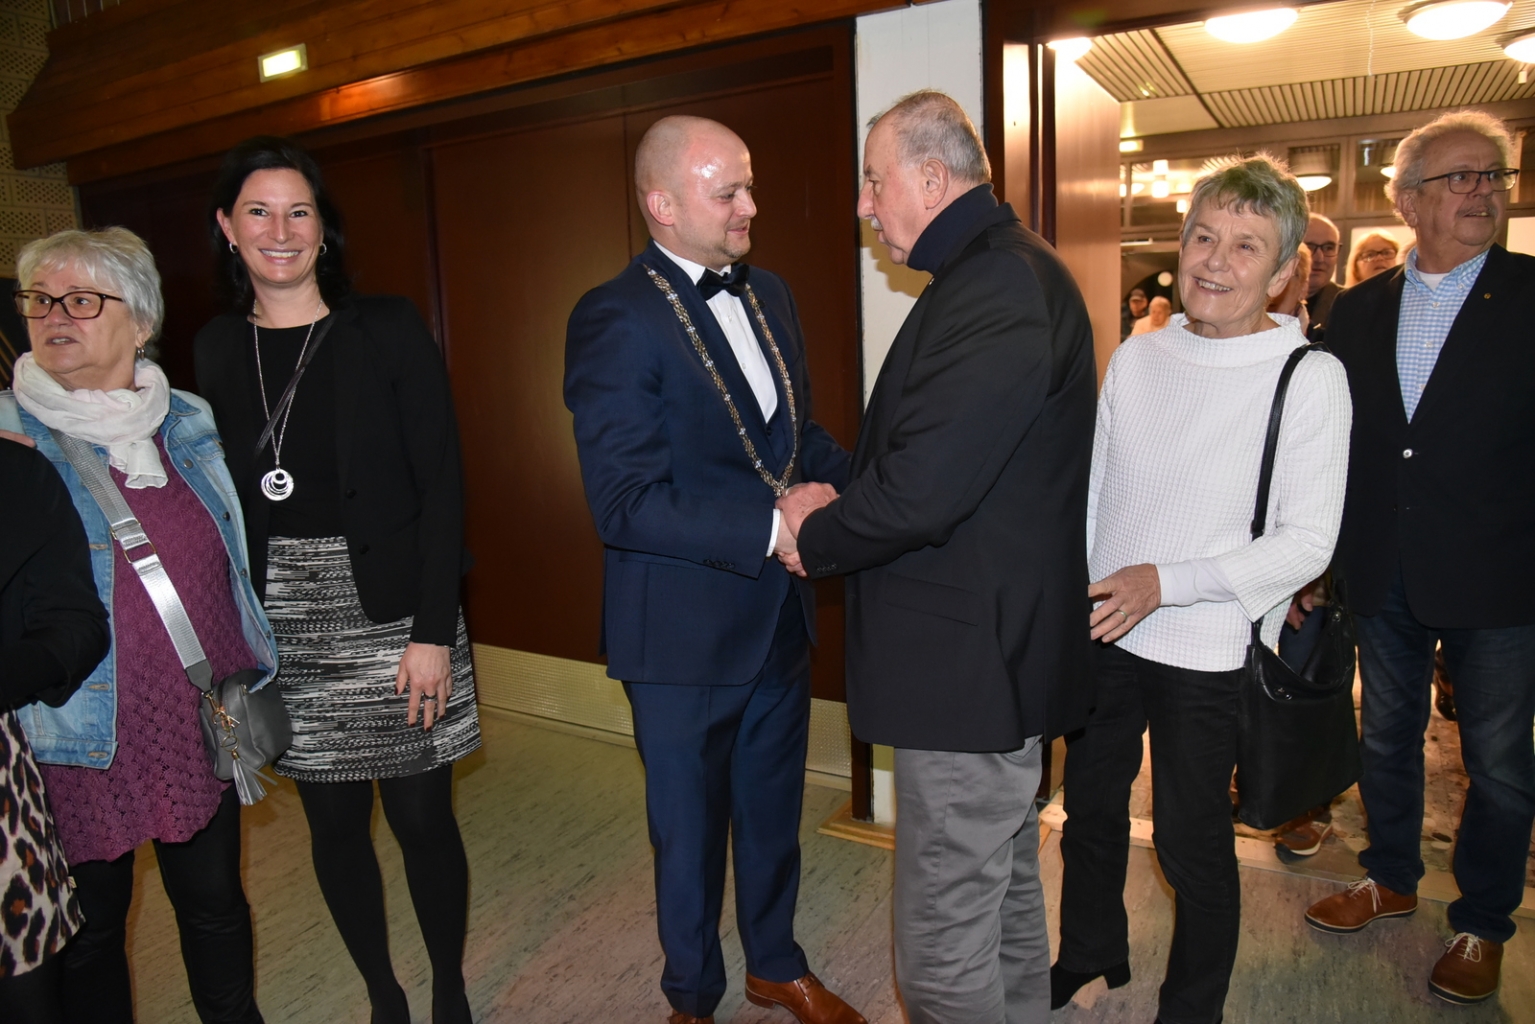 Bürgermeister Pascal Seidel mit Ehefrau Alexandra und Tochter Mia begrüßte die ankommenden Gäste persönlich. Hier der Vorsitzende des Heimat- und Kulturkreises Oftersheim, Dieter Burkard.